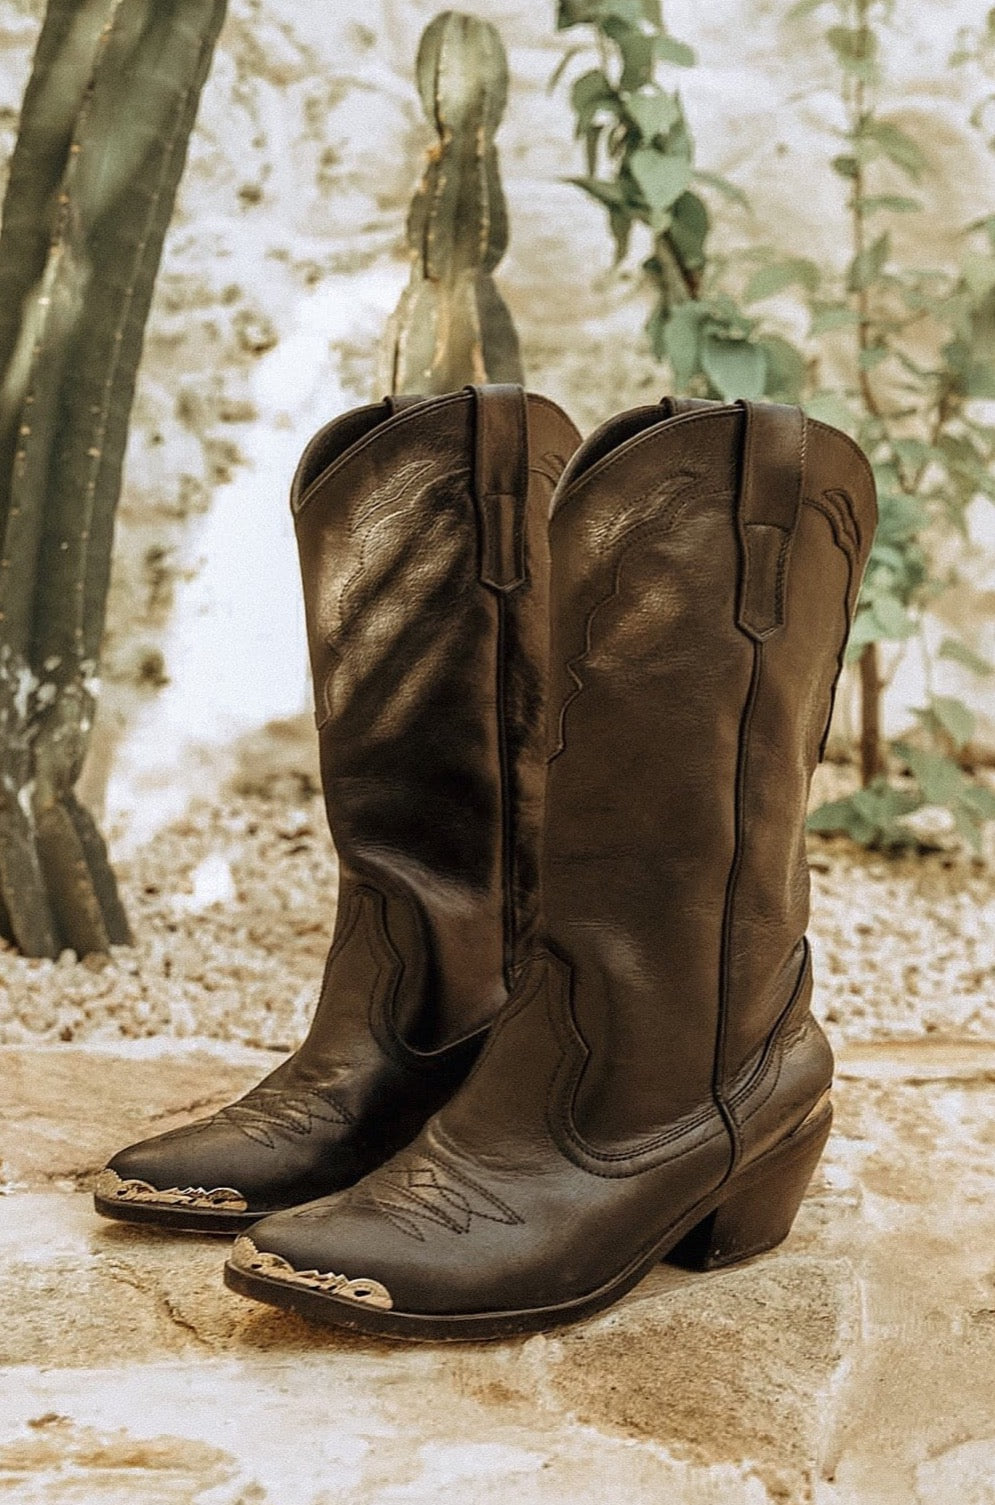 The Texan Cowboy Boot